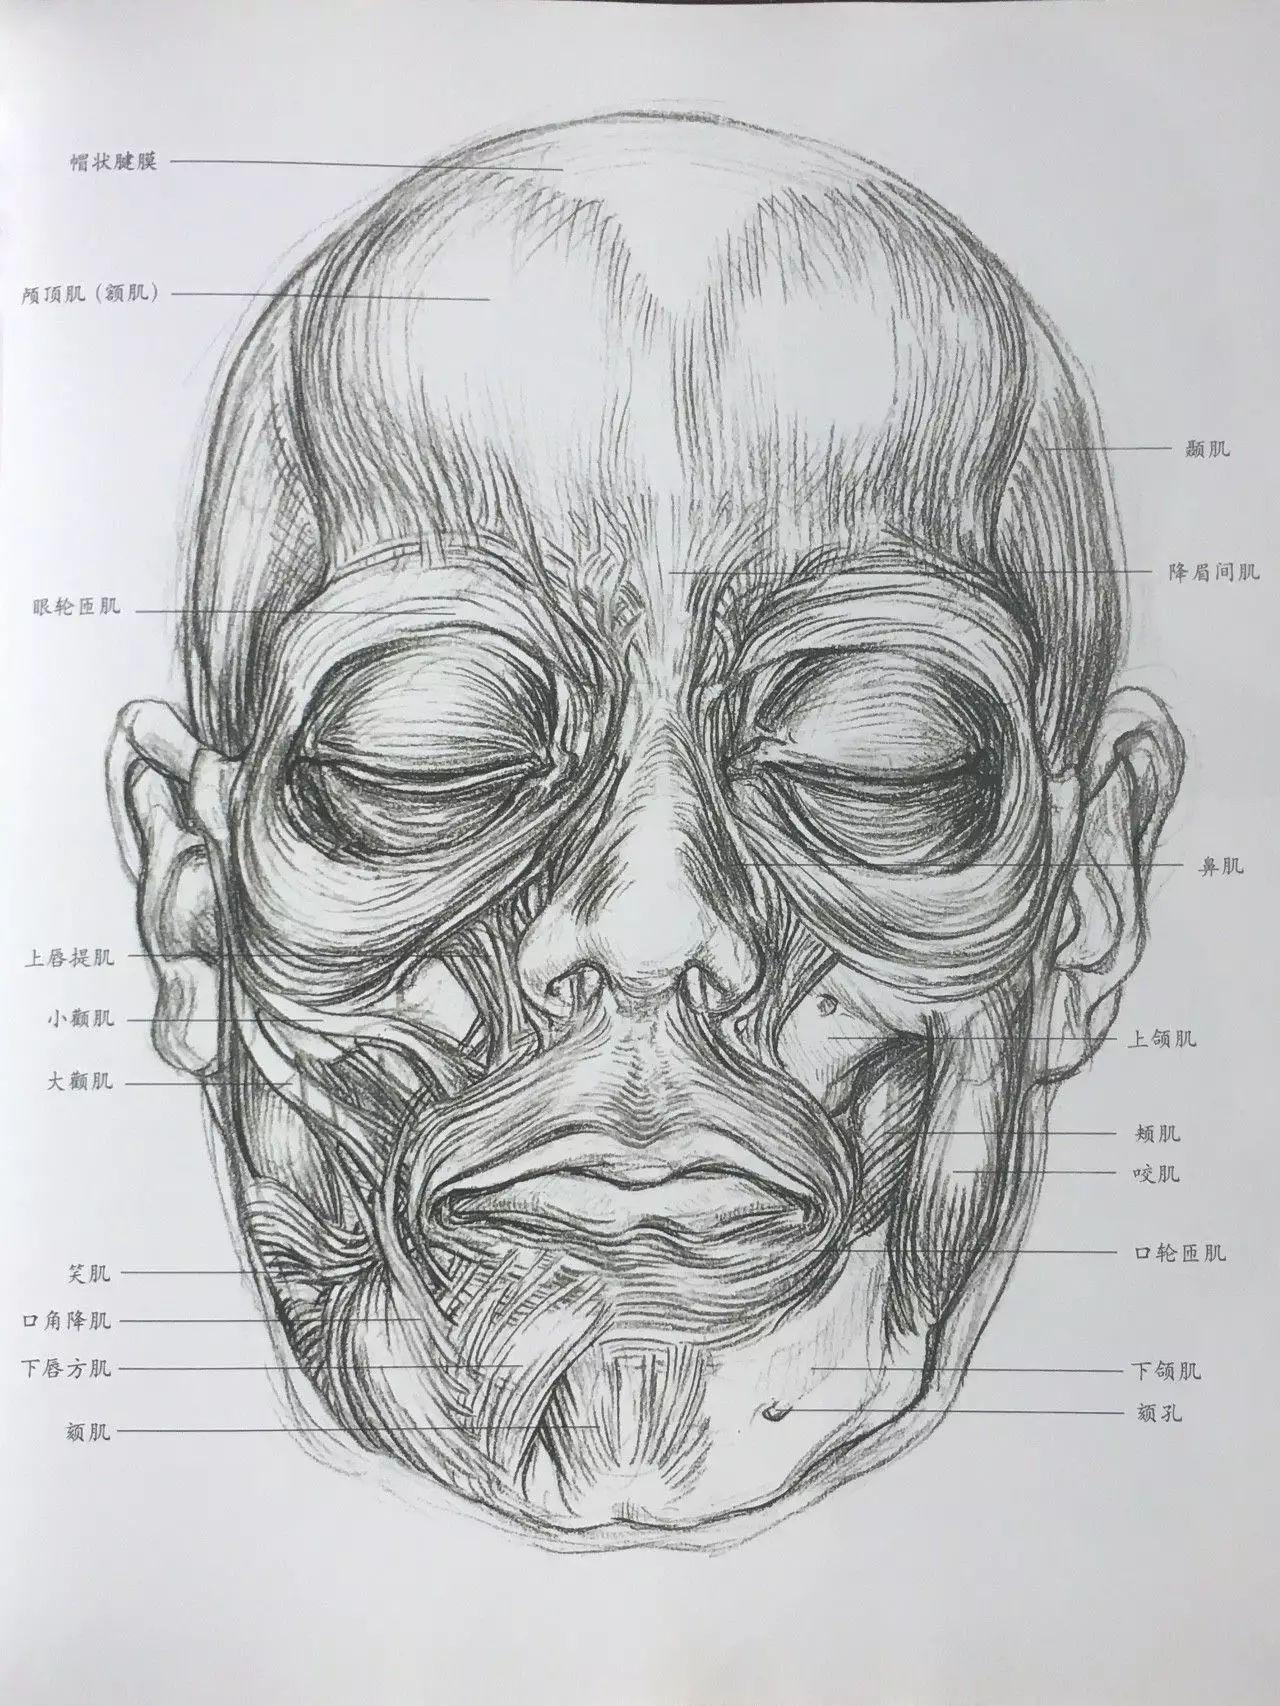 面部血管清晰图-图库-五毛网